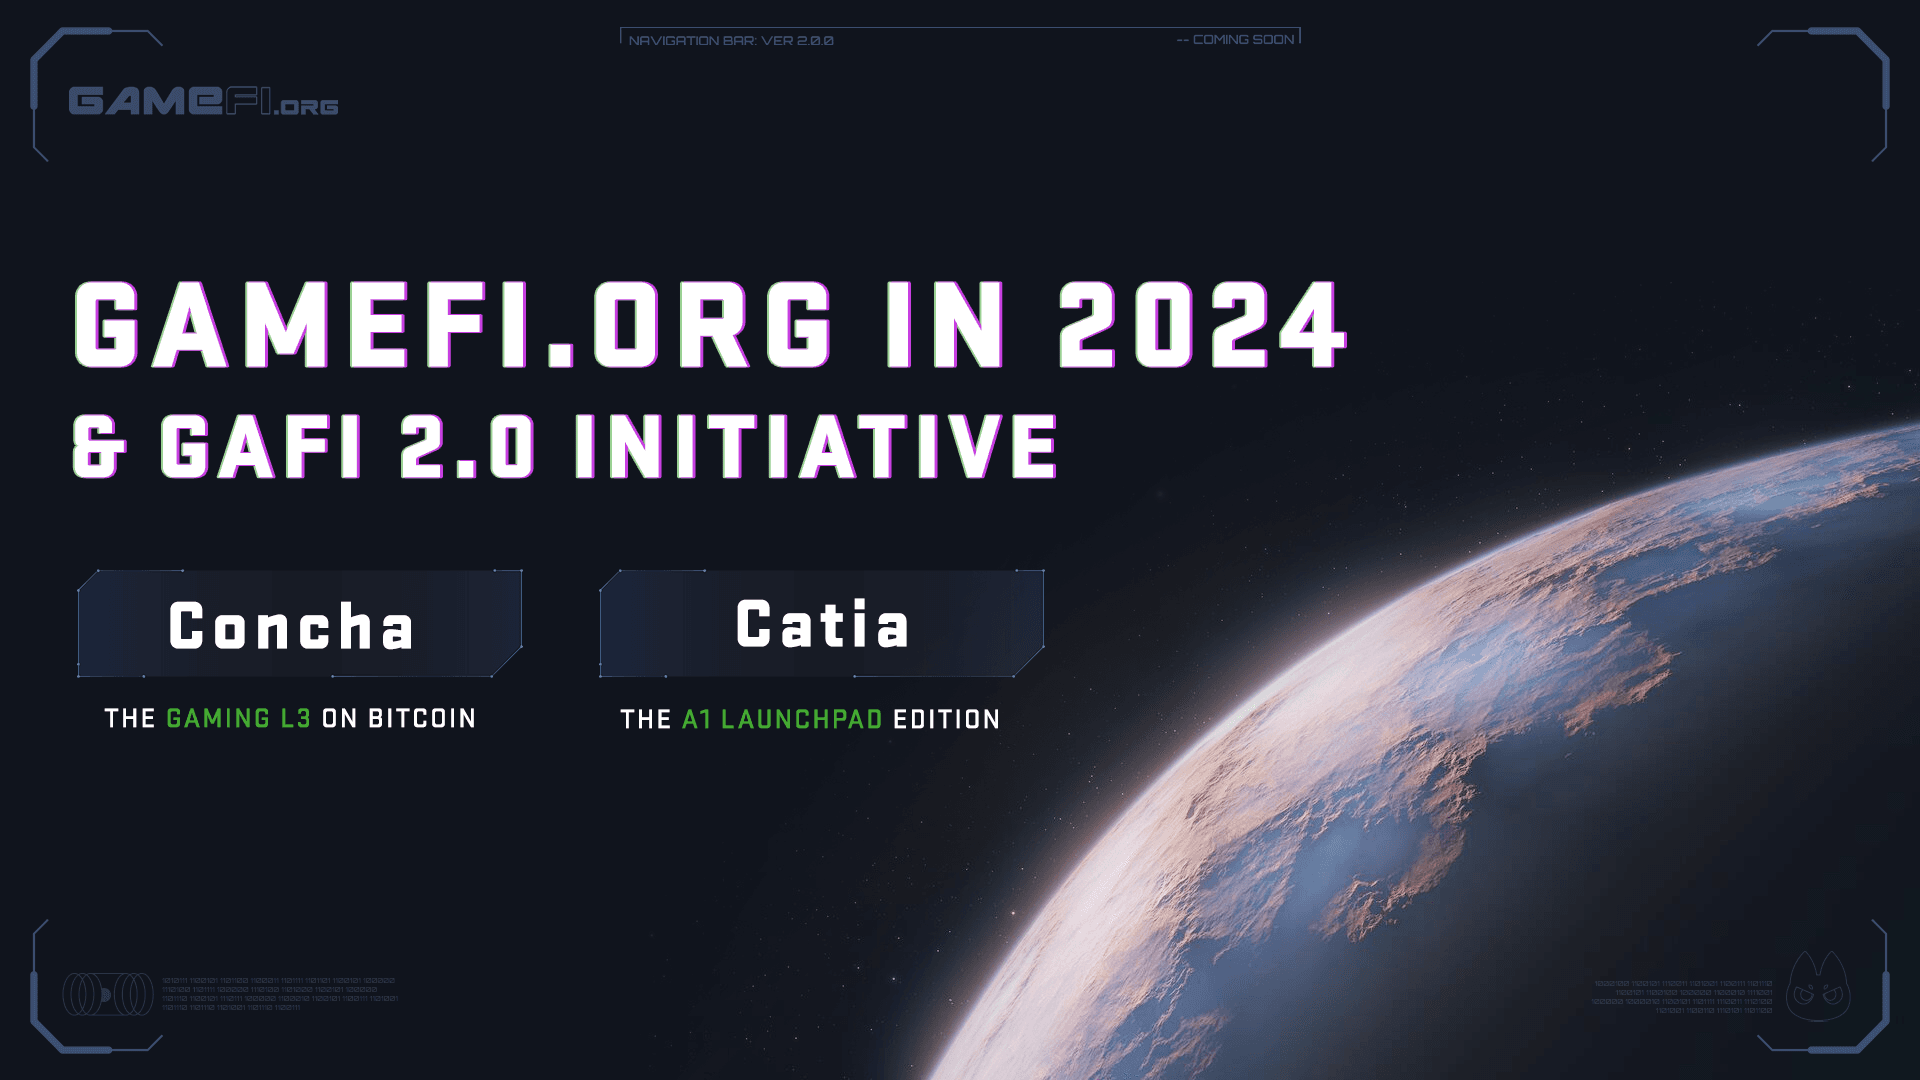 GameFi.org in 2024 and GAFI 2.0 Initiative.